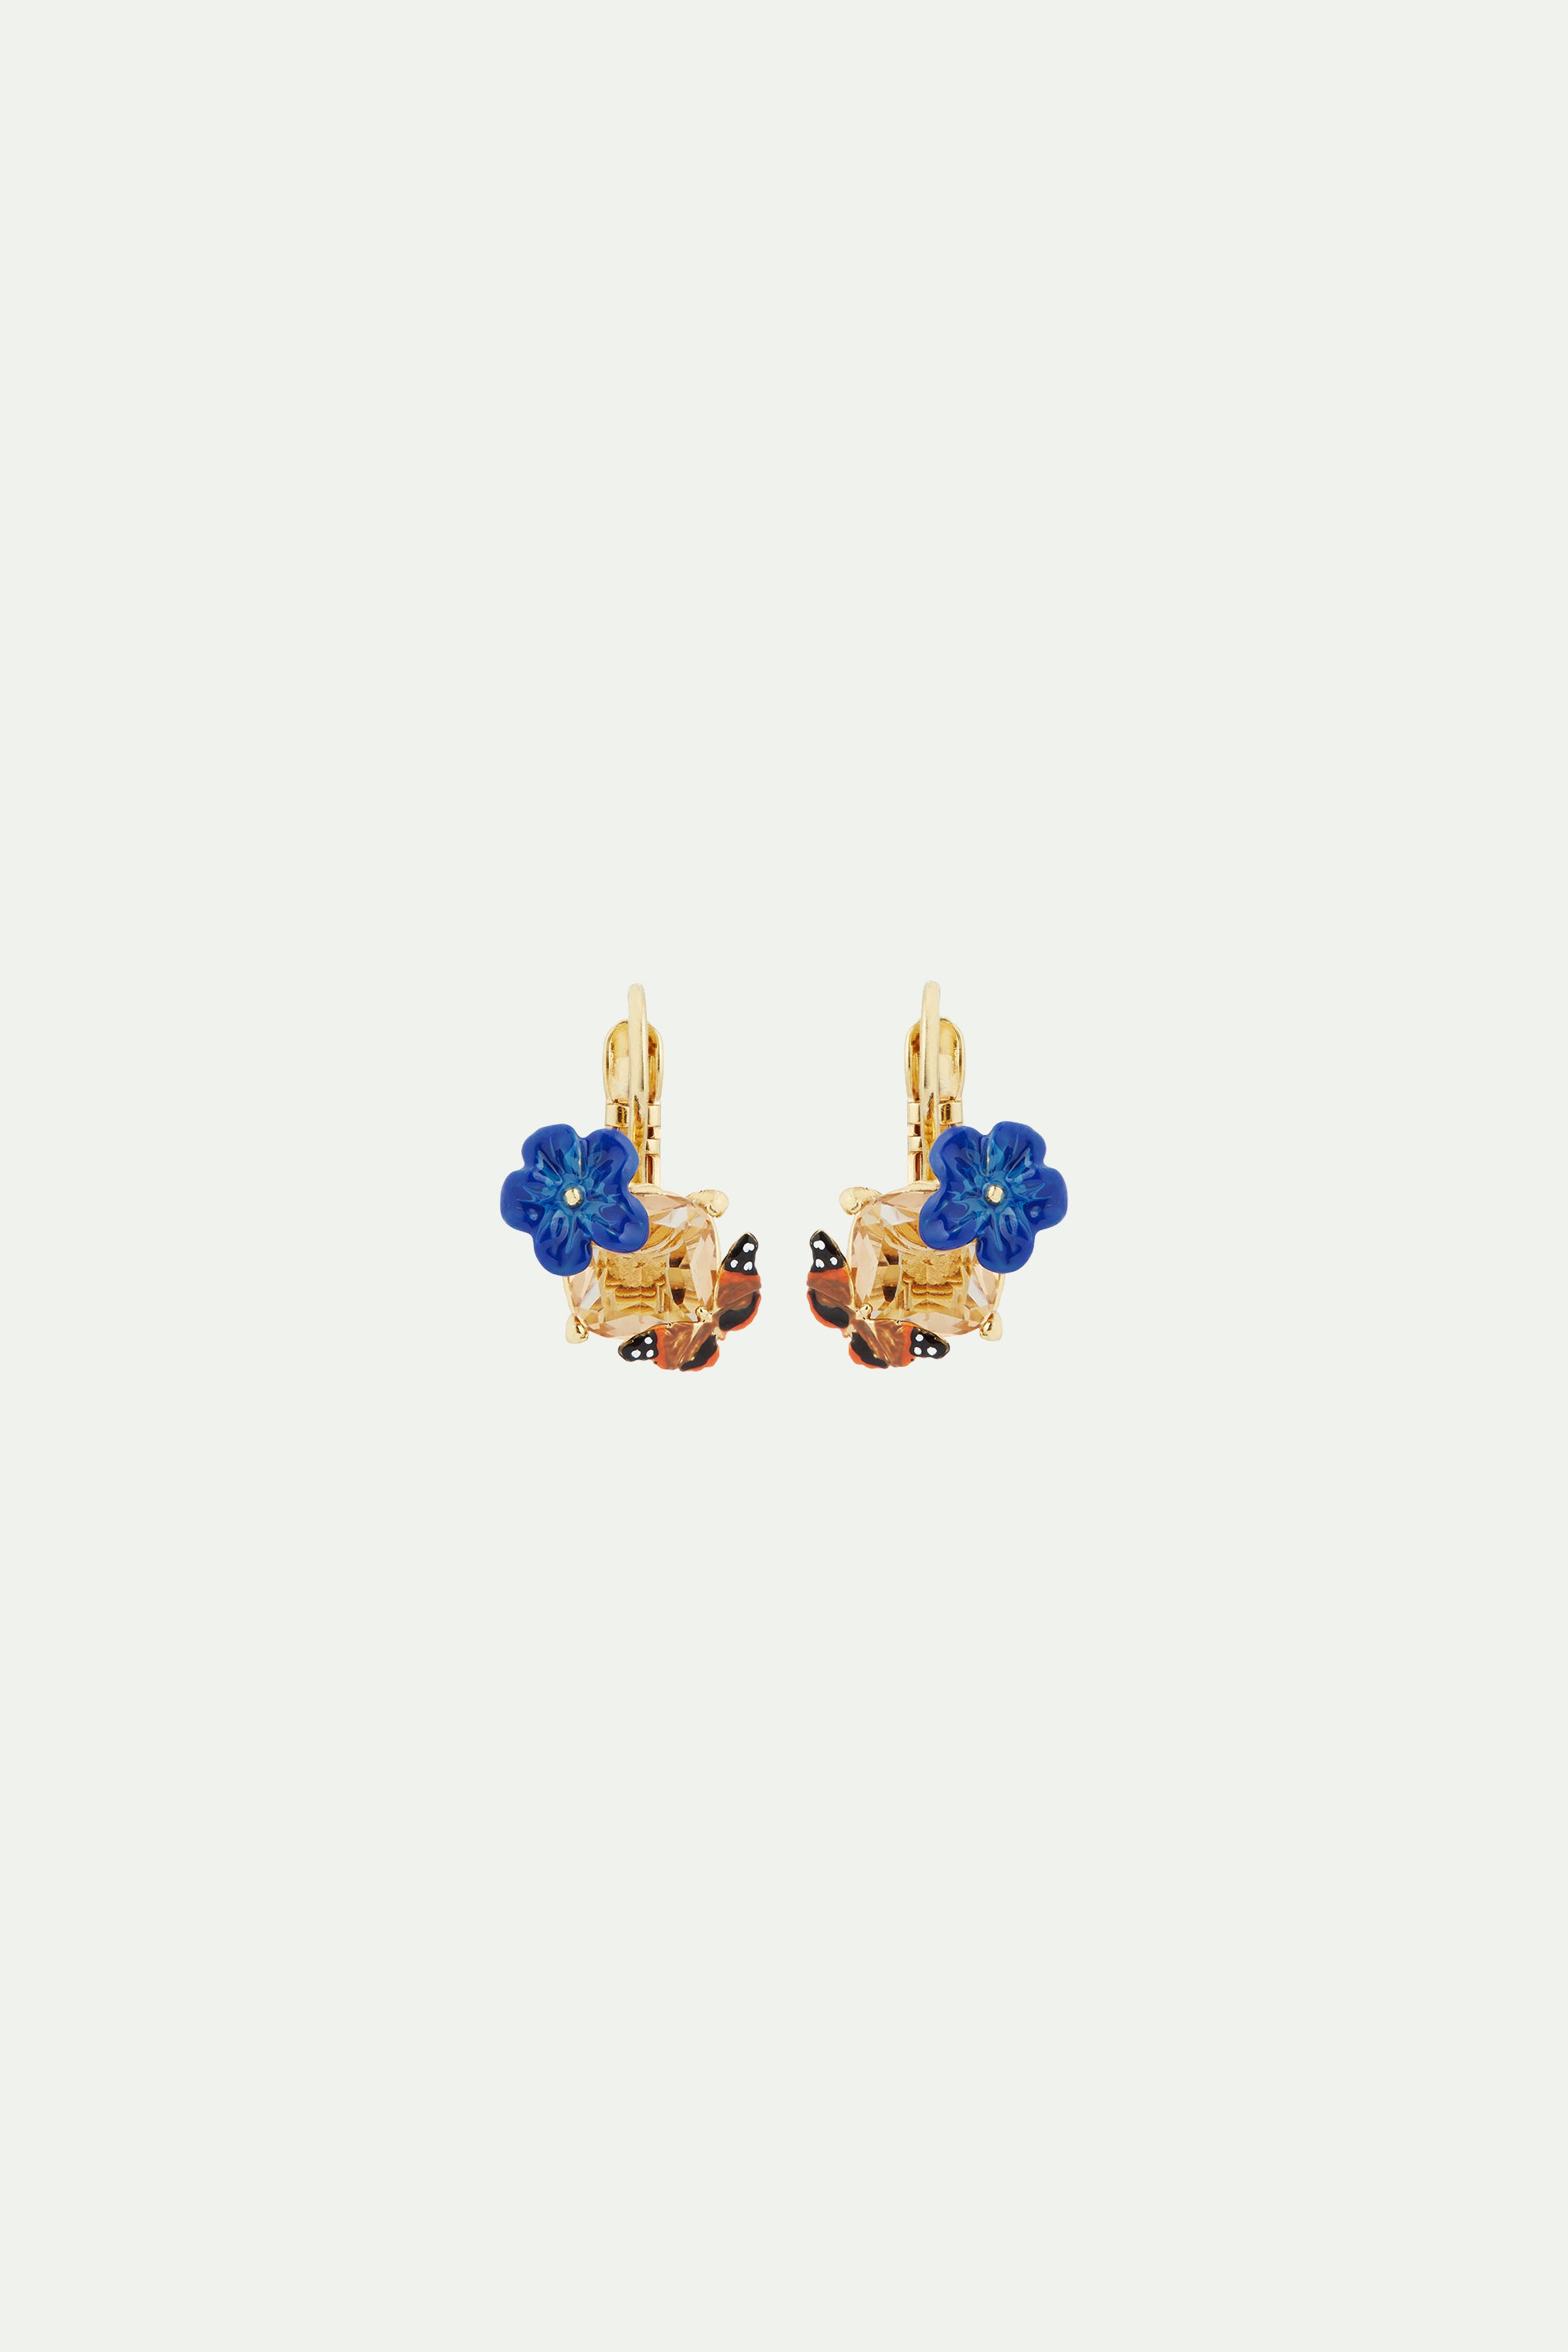 Boucles d'oreilles dormeuses fleur de lin bleue, verre facetté et papillon